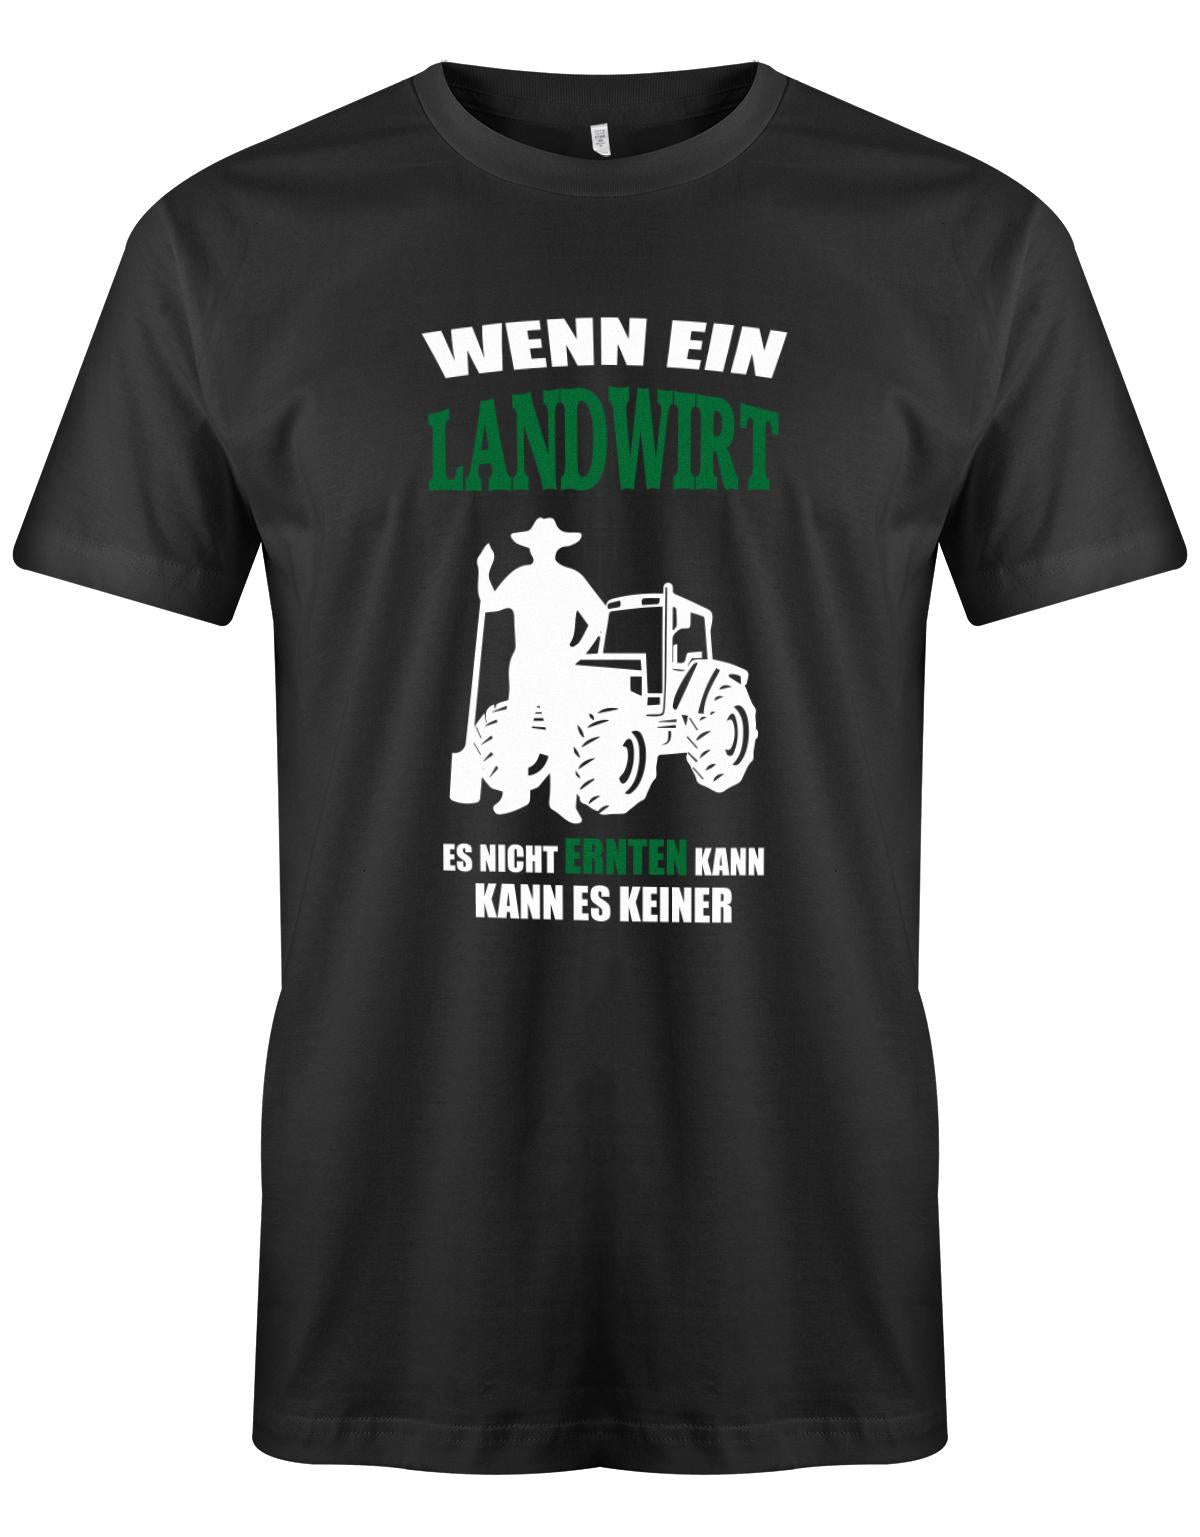 Landwirtschaft Shirt Männer - Wenn ein Landwirt es nicht ernten kann. Kann es keiner Schwarz